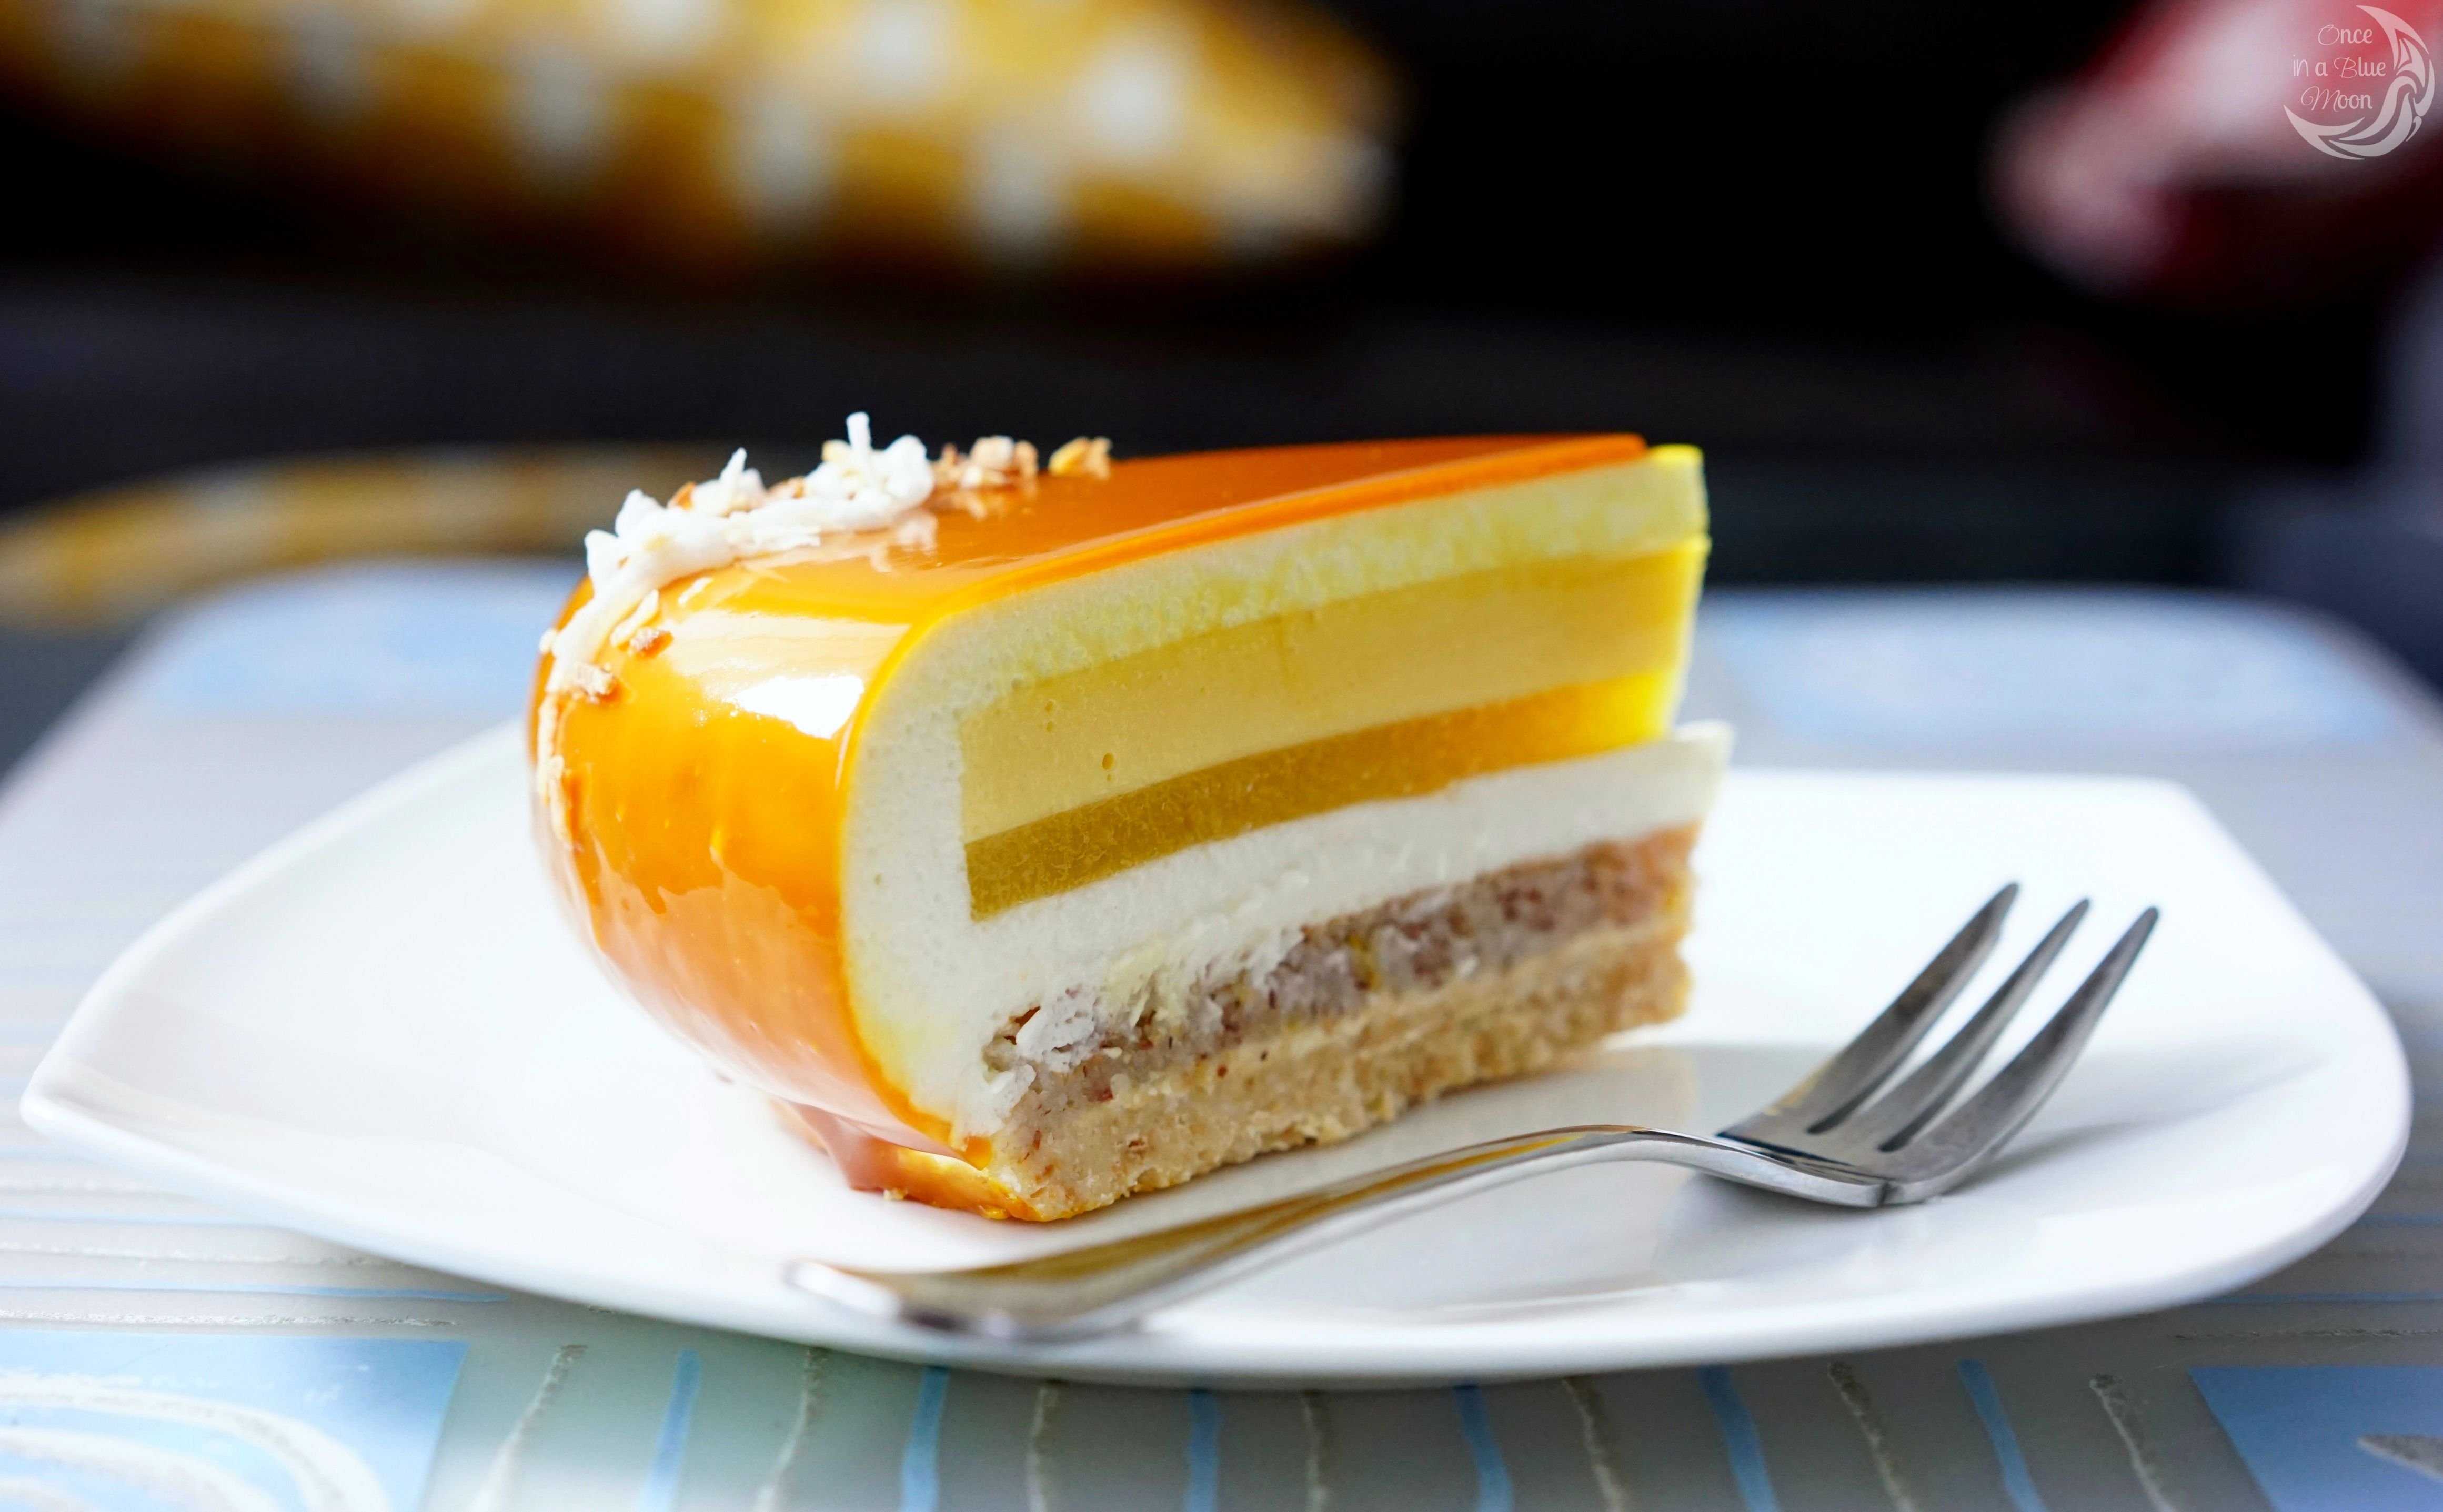 Муссовый торт "манго-маракуйя": рецепт и способы приготовления в домашних условиях